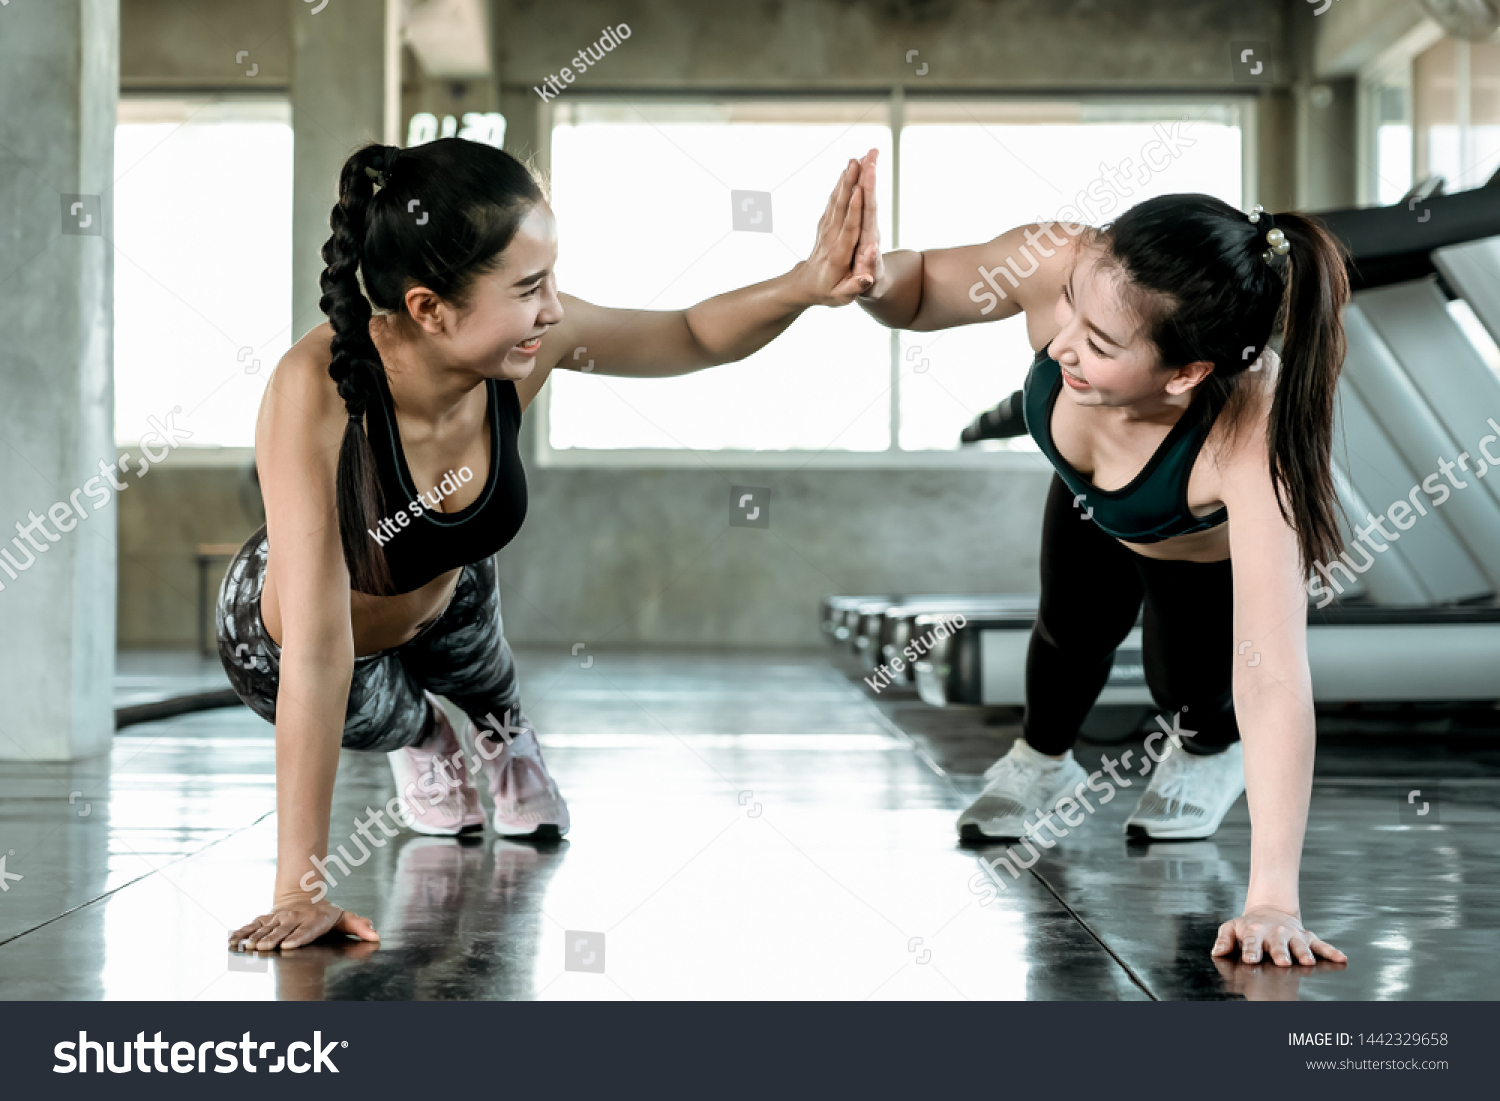 Lesbian Gym Trainer